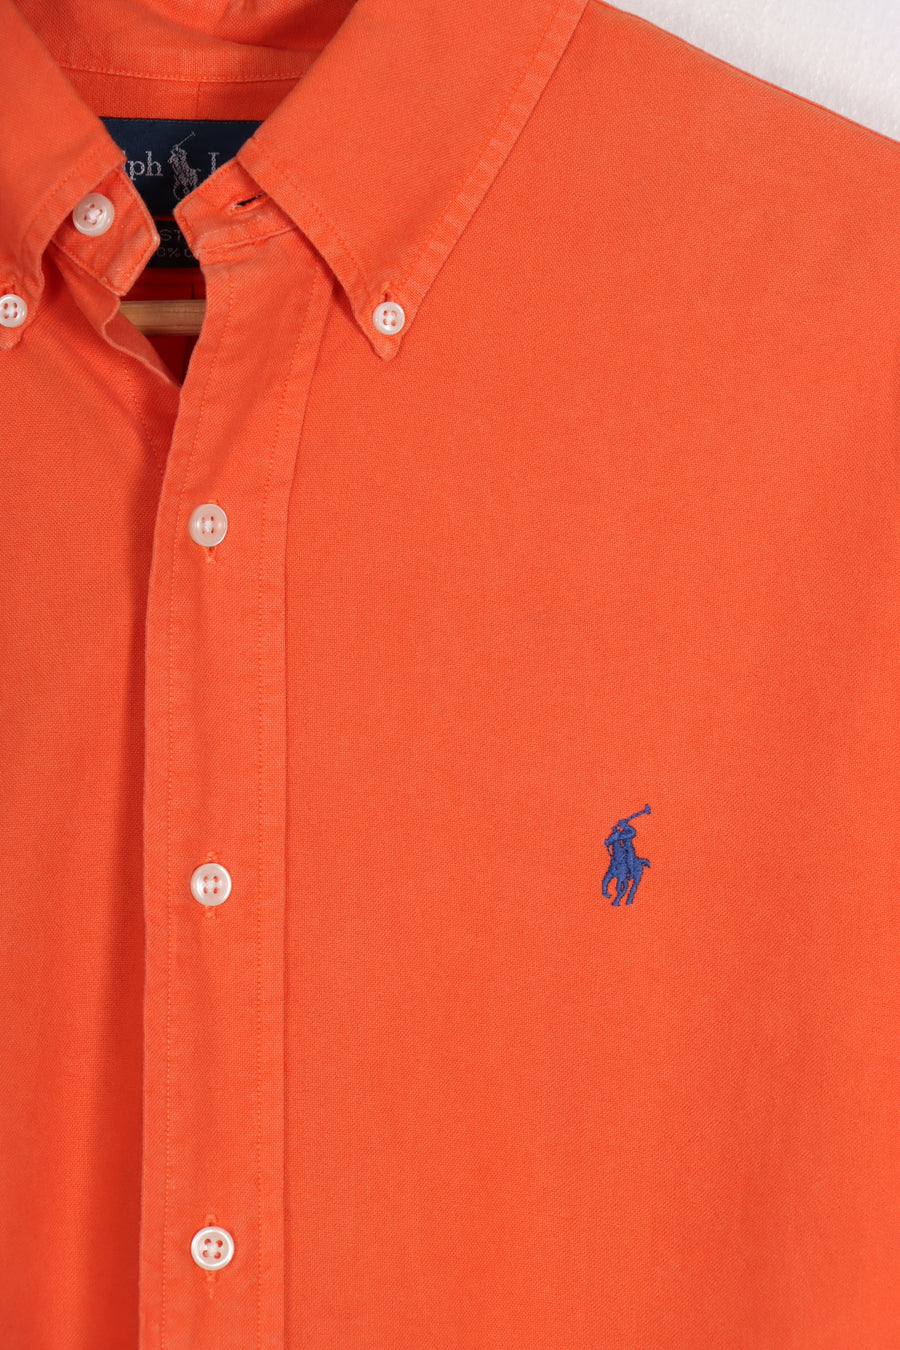 Vintage RALPH LAUREN 'Custom Fit' Orange Button Up Shirt (L)